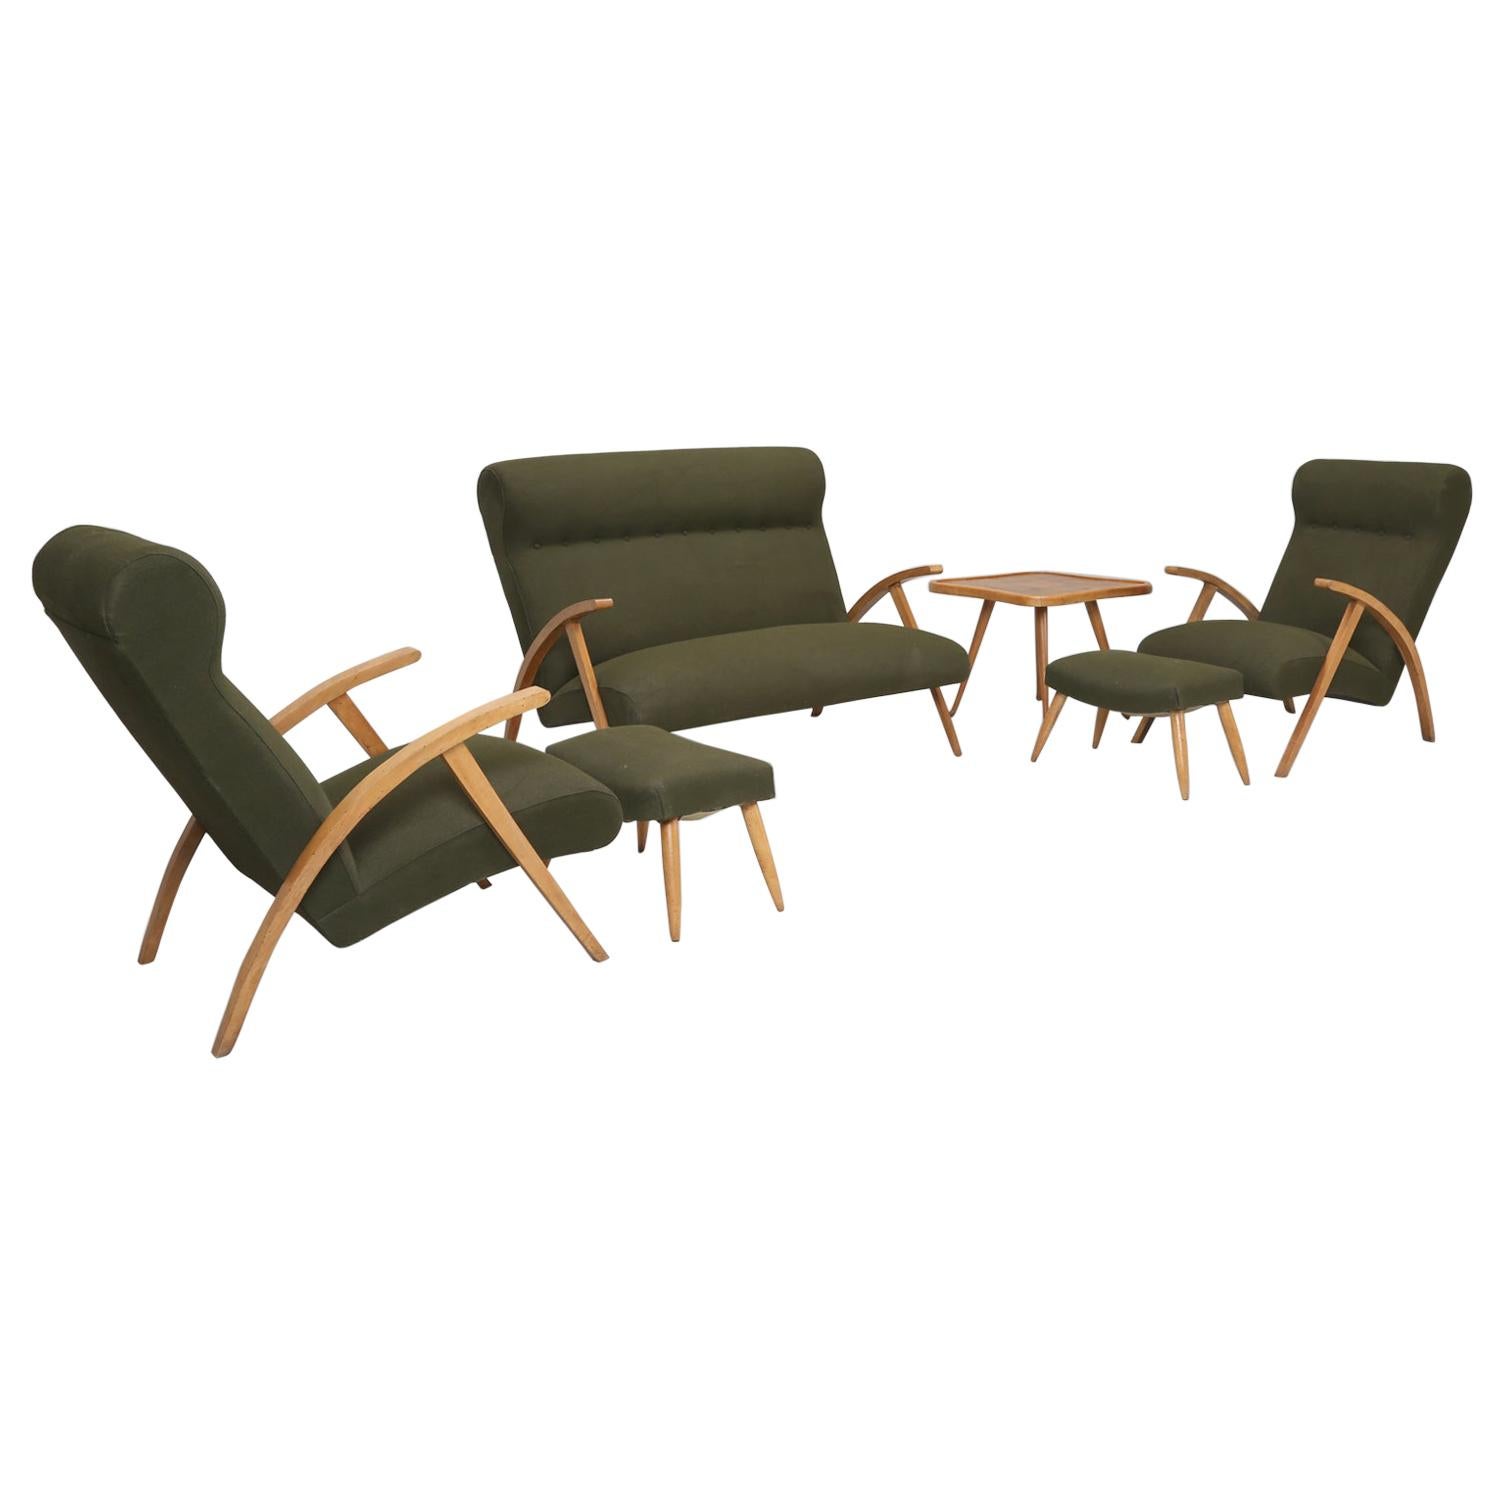 Suite complète de chaises italiennes modernes du milieu du siècle dernier avec repose-pieds, banquette et table